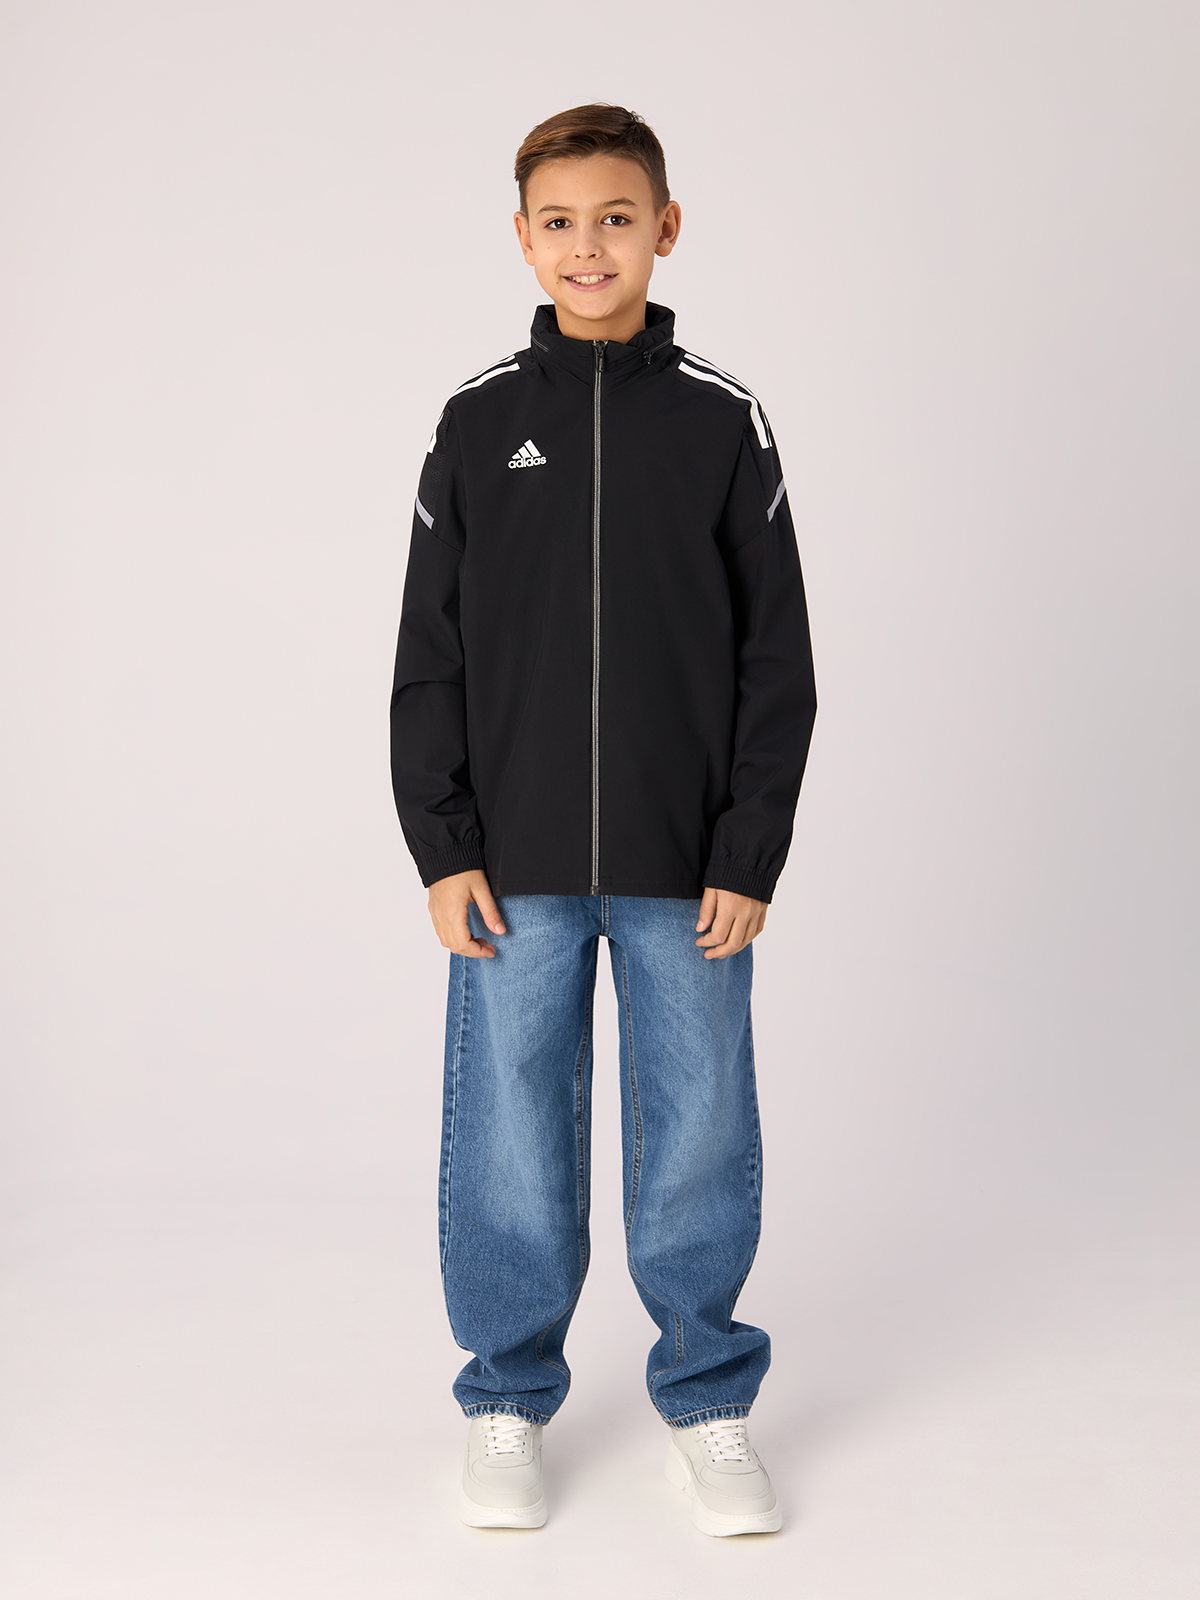 Ветровка Adidas Con 21 Aw Jkt Y, для мальчиков, GM1484, размер 152 см костюм для мальчиков adidas tiberio